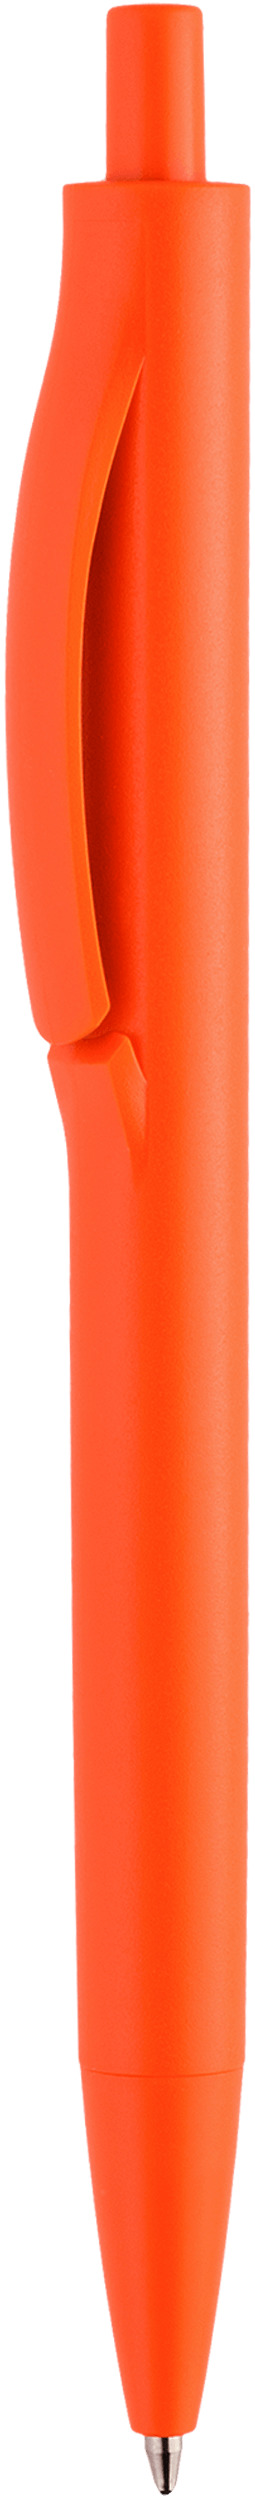 Шариковая ручка Igla Color, оранжевая